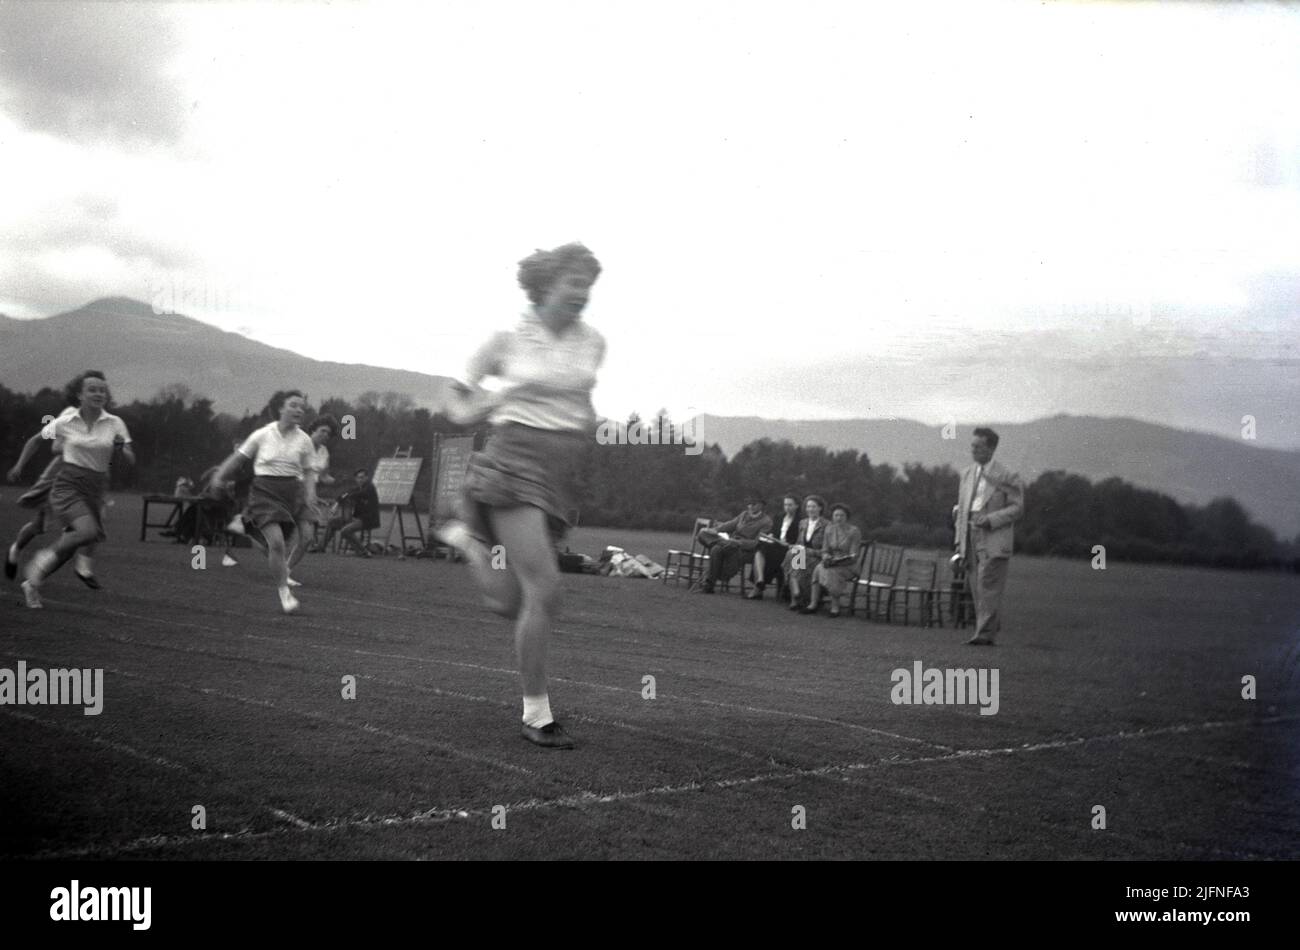 1952, storica, studentesse che competono in una corsa di sprint fuori su una pista di erba, Highlands, Scozia, Regno Unito. Foto Stock